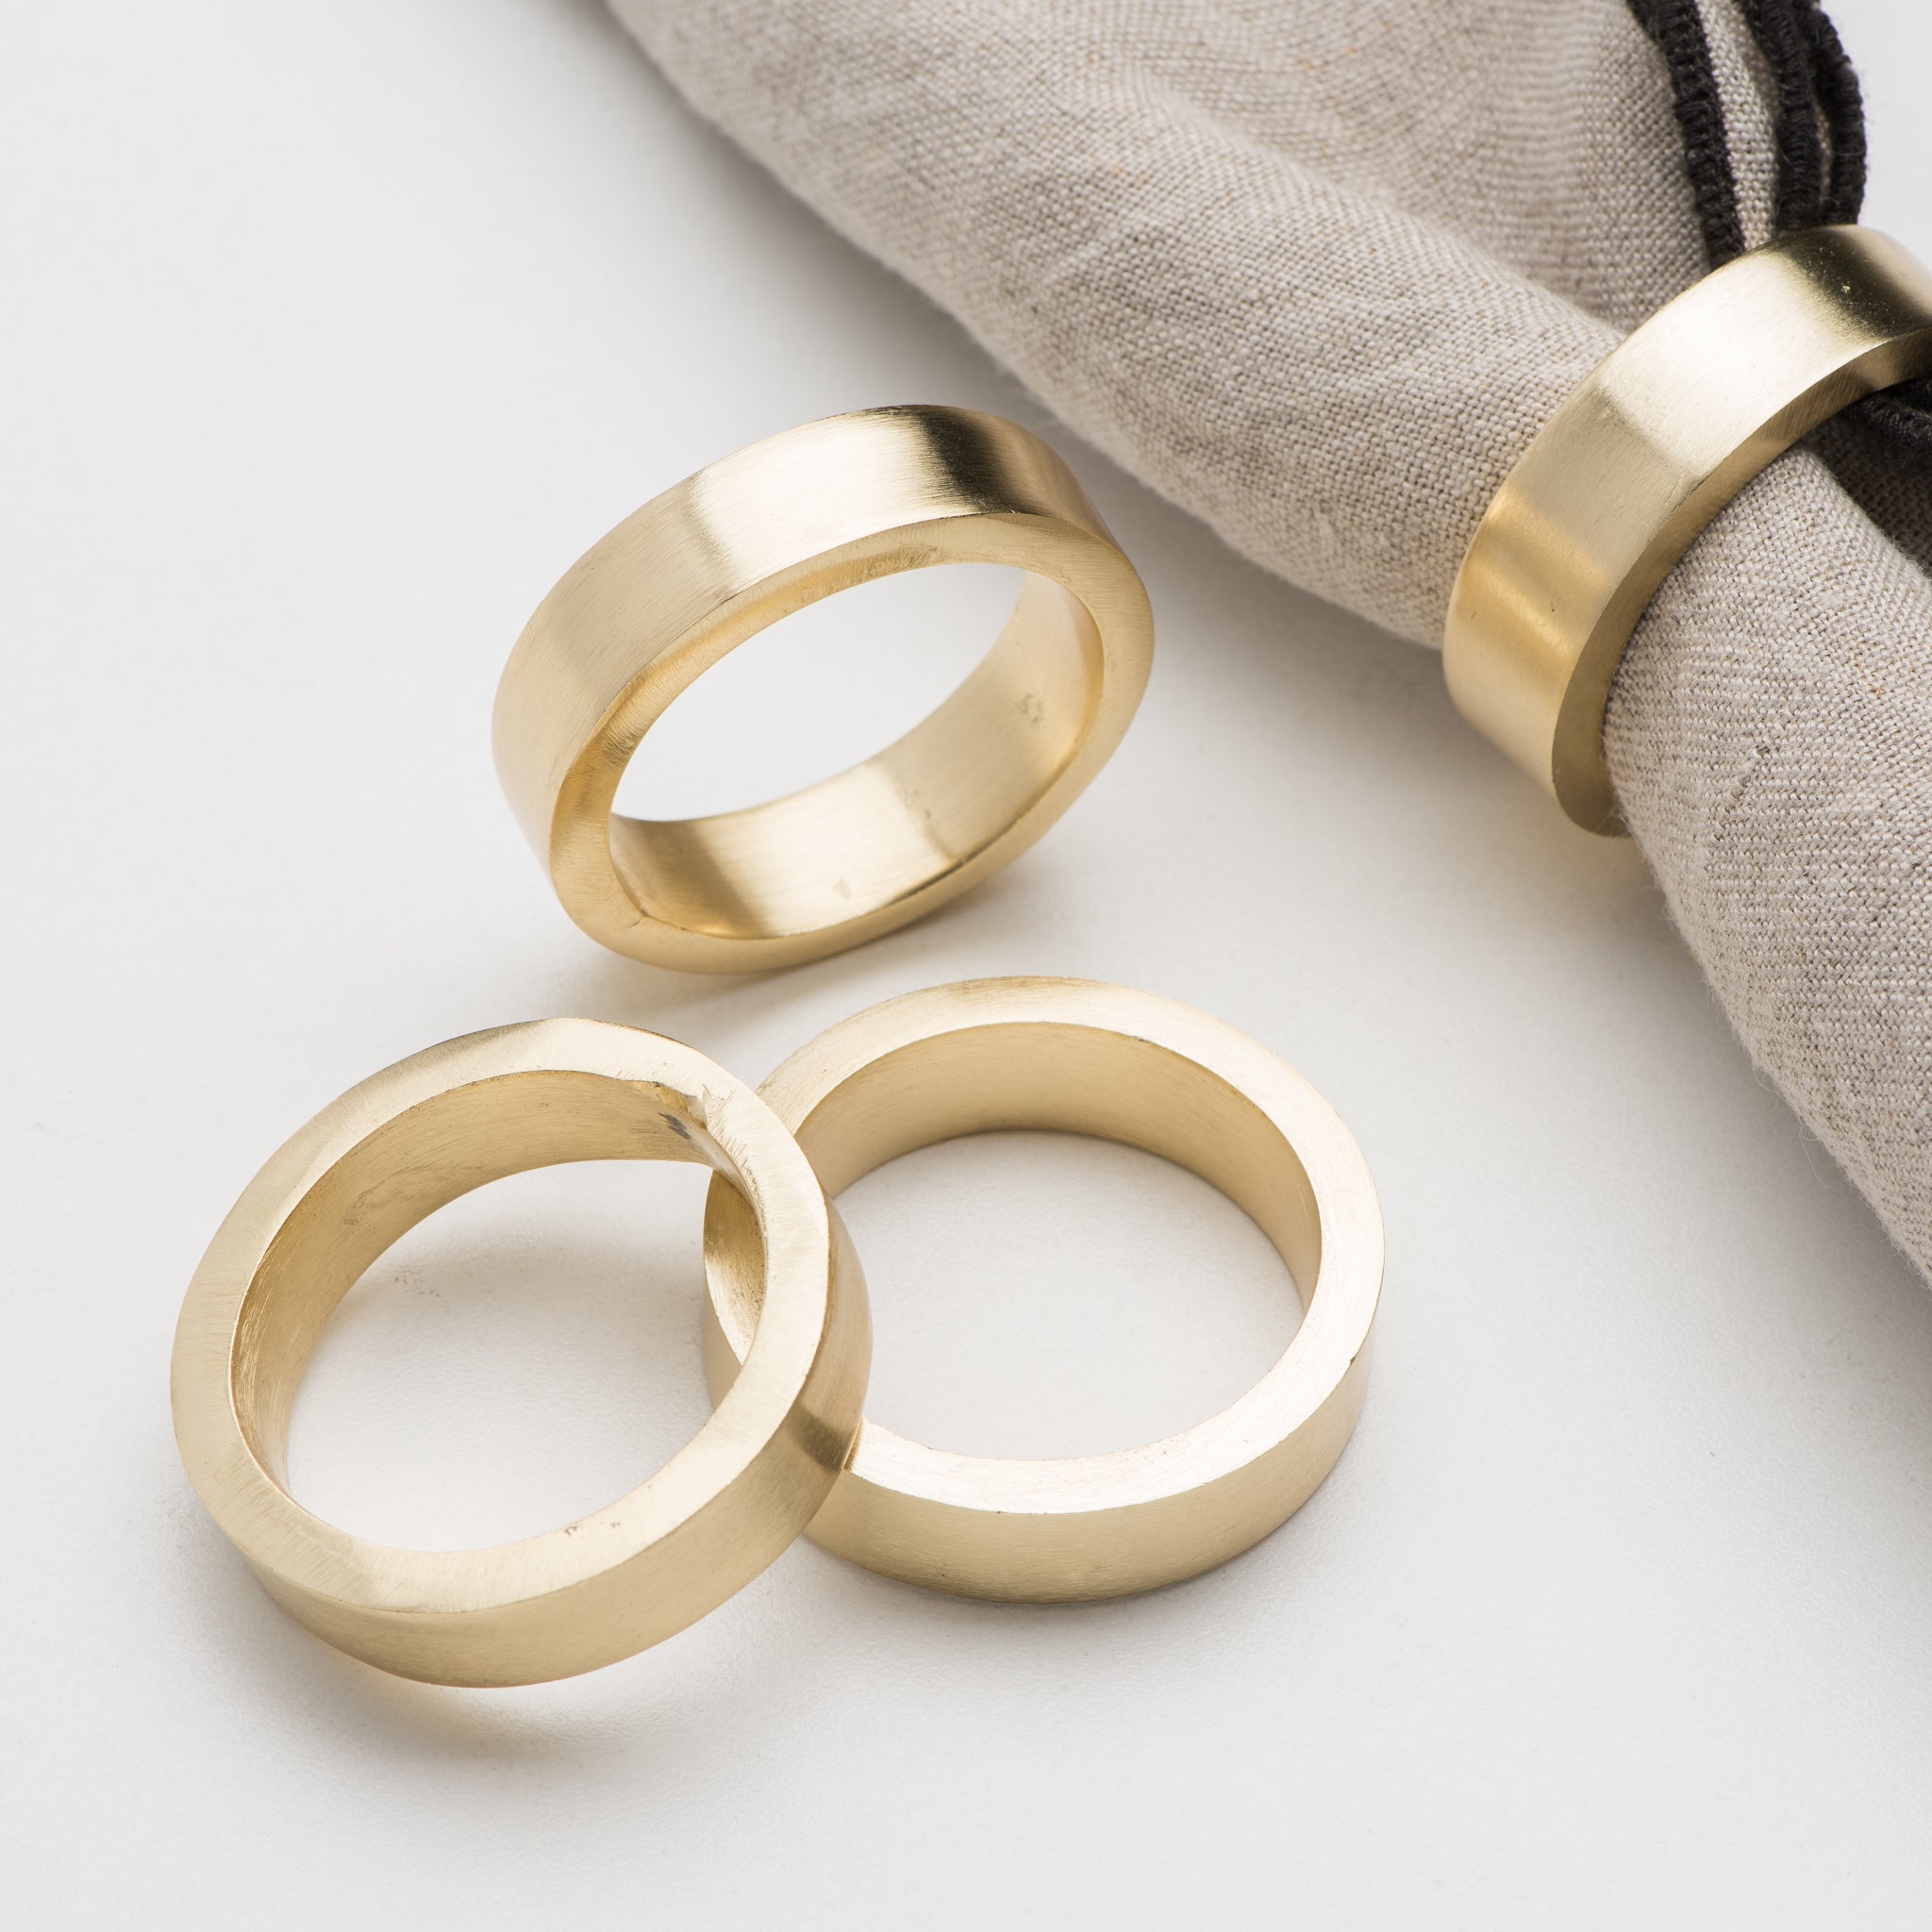 gold napkin rings target